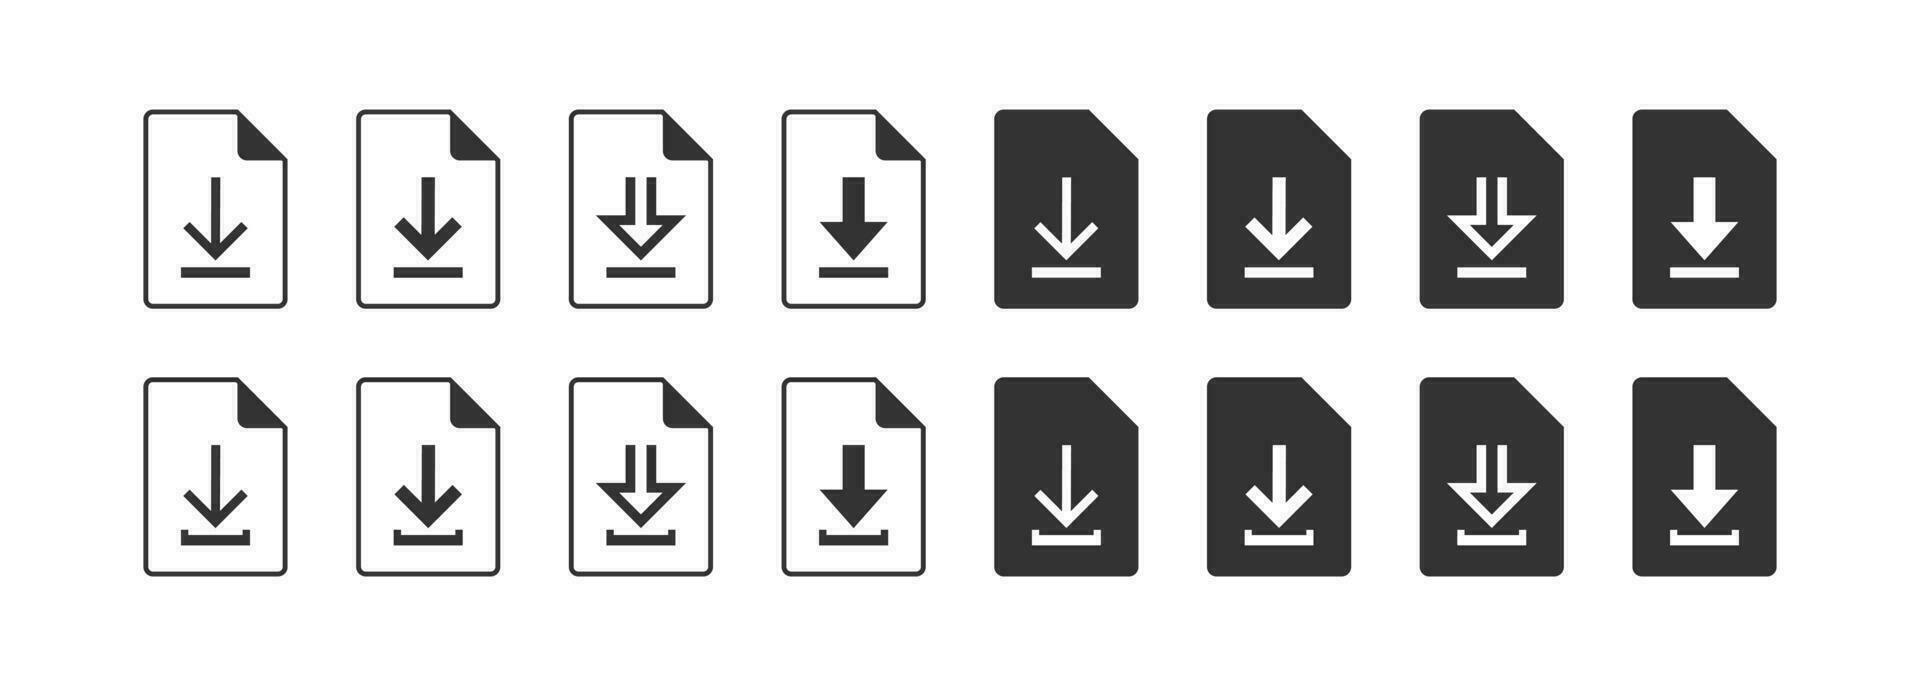 Télécharger fichier icône ensemble. document télécharger symbole. signe enregistrer information vecteur. vecteur